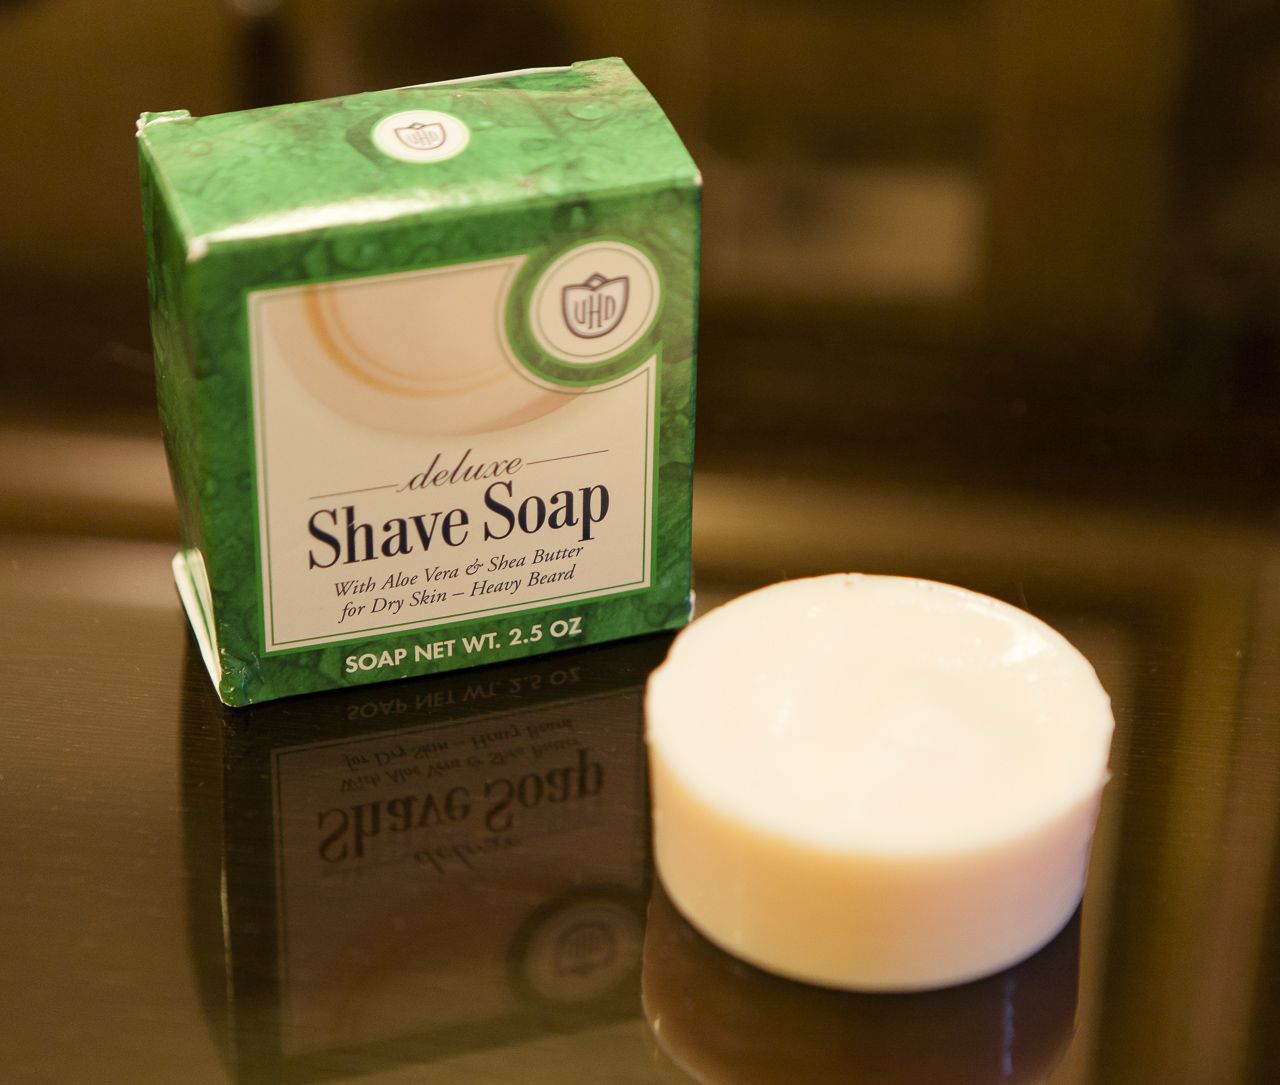 Van der hagen shave soap deluxe - opakowanie